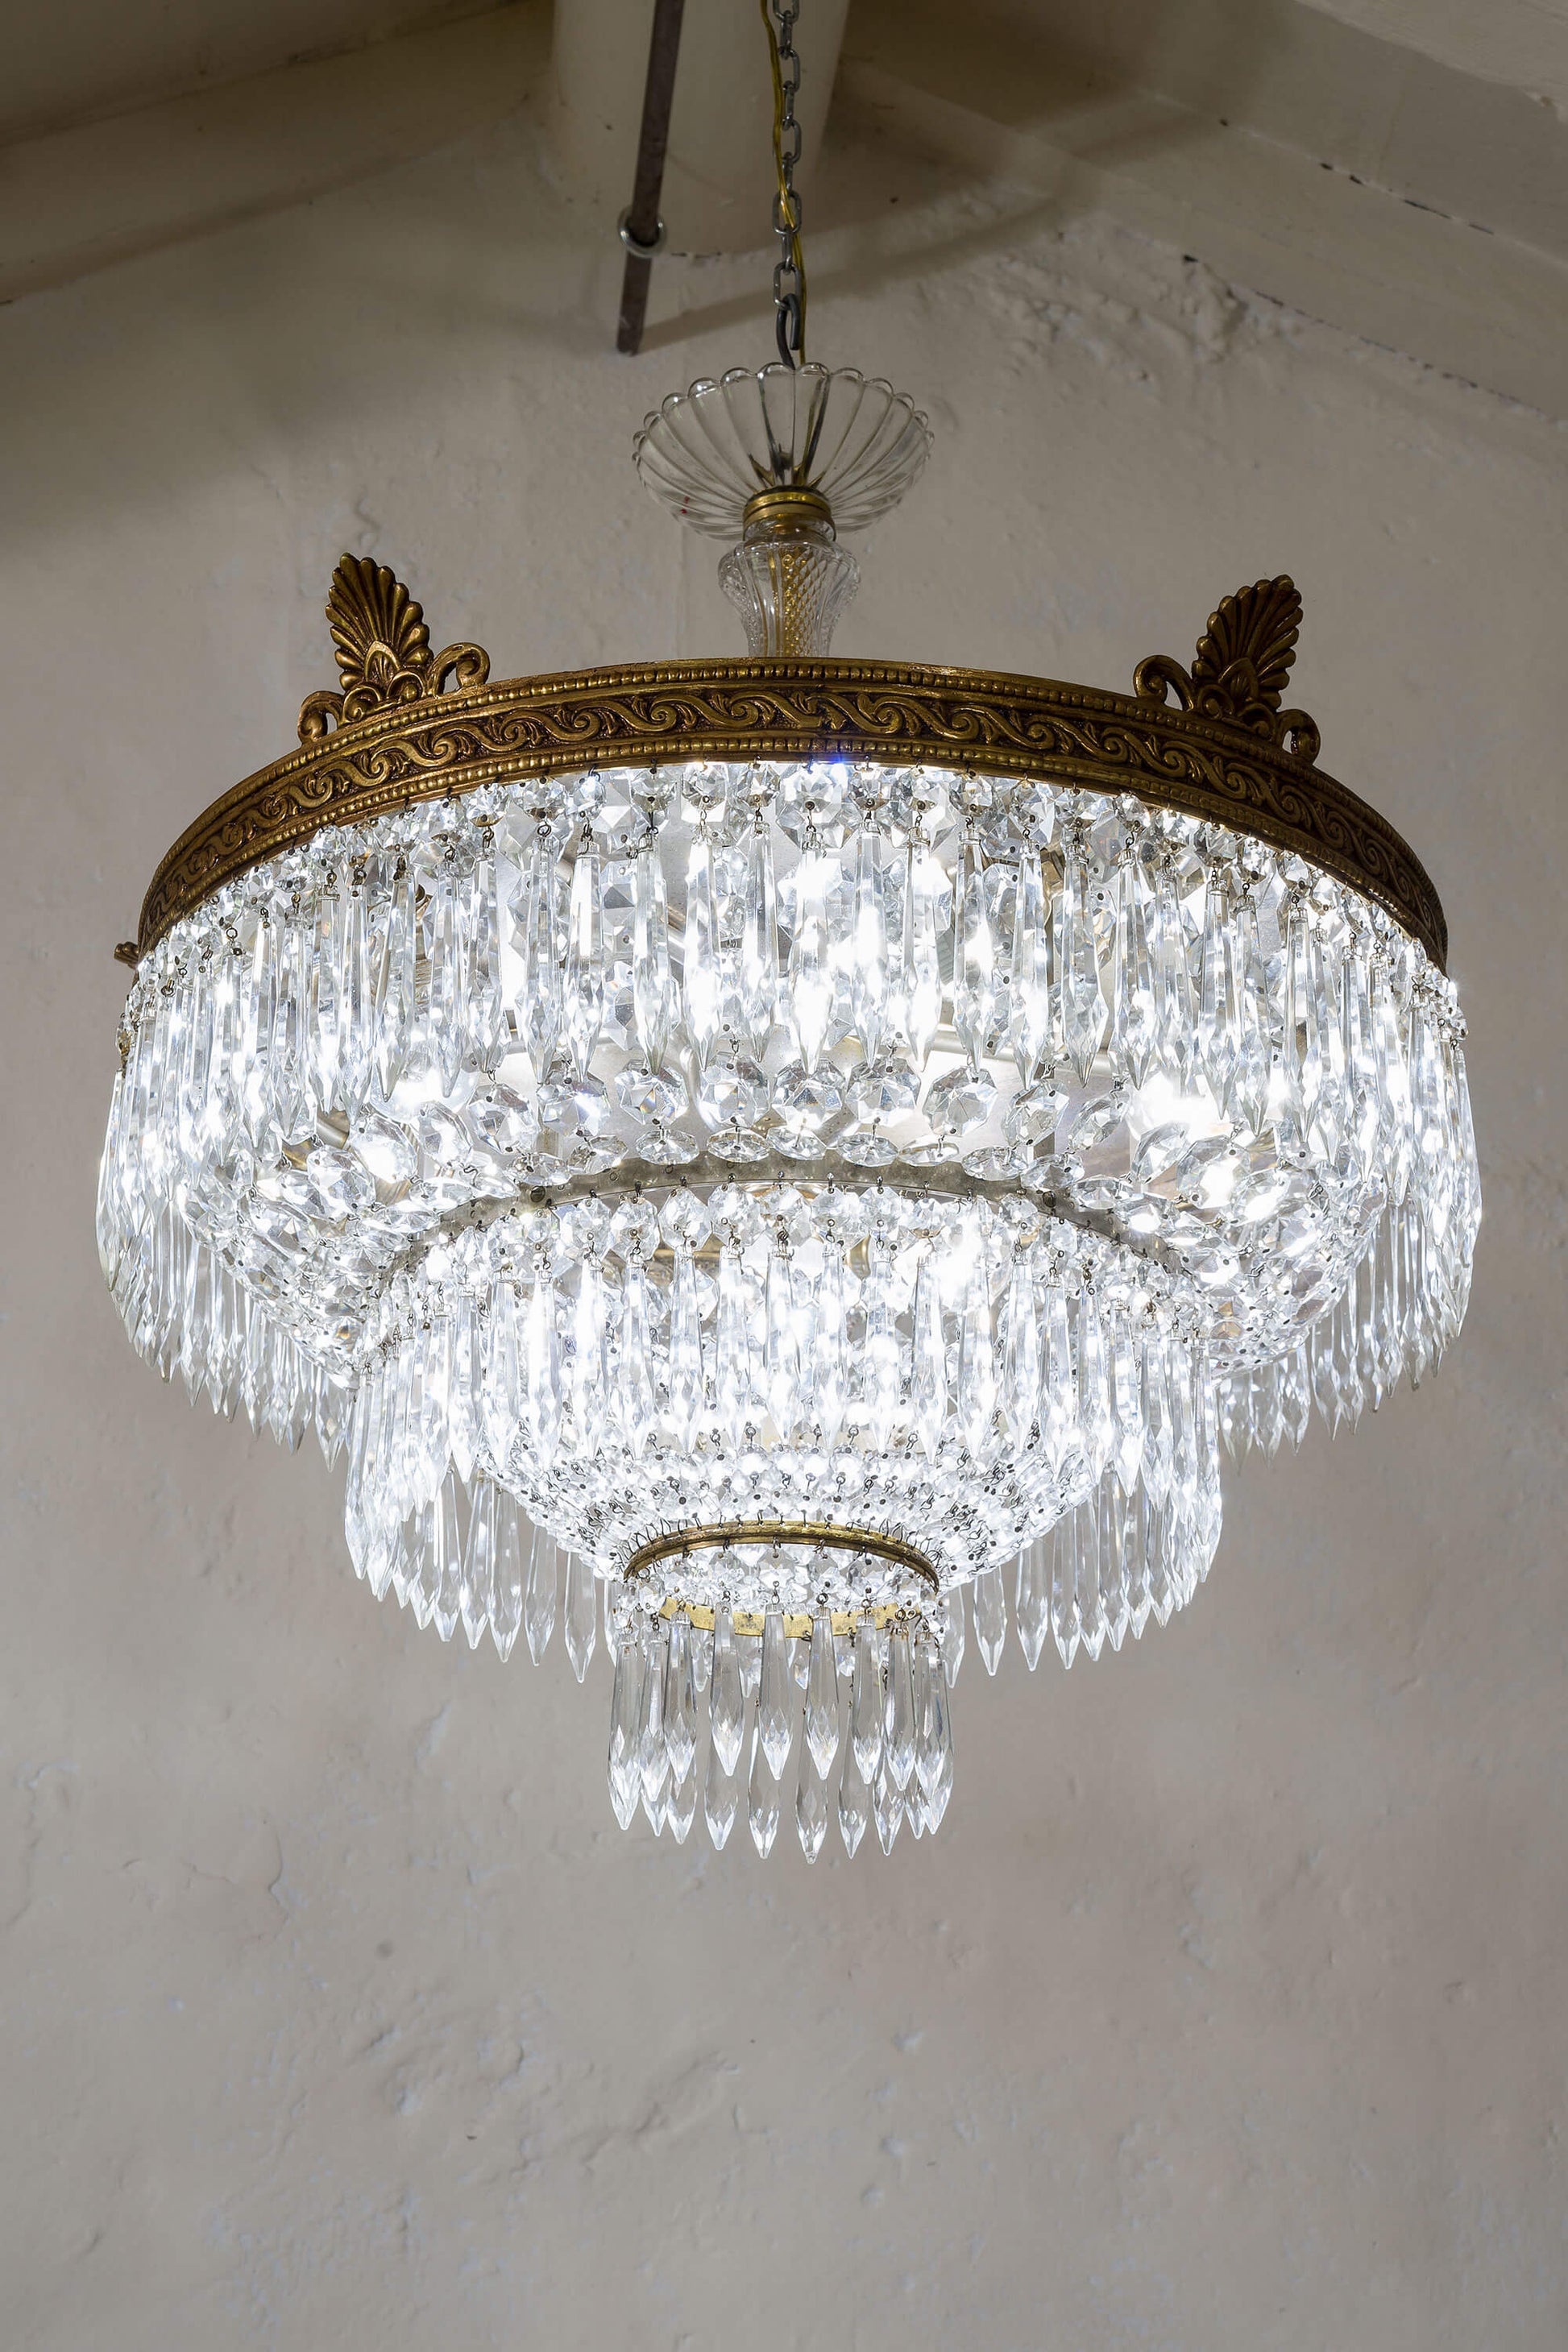 Dettaglio dei cristalli ottagonali che adornano la corona superiore della plafoniera vintage.Lo Stile Italiano